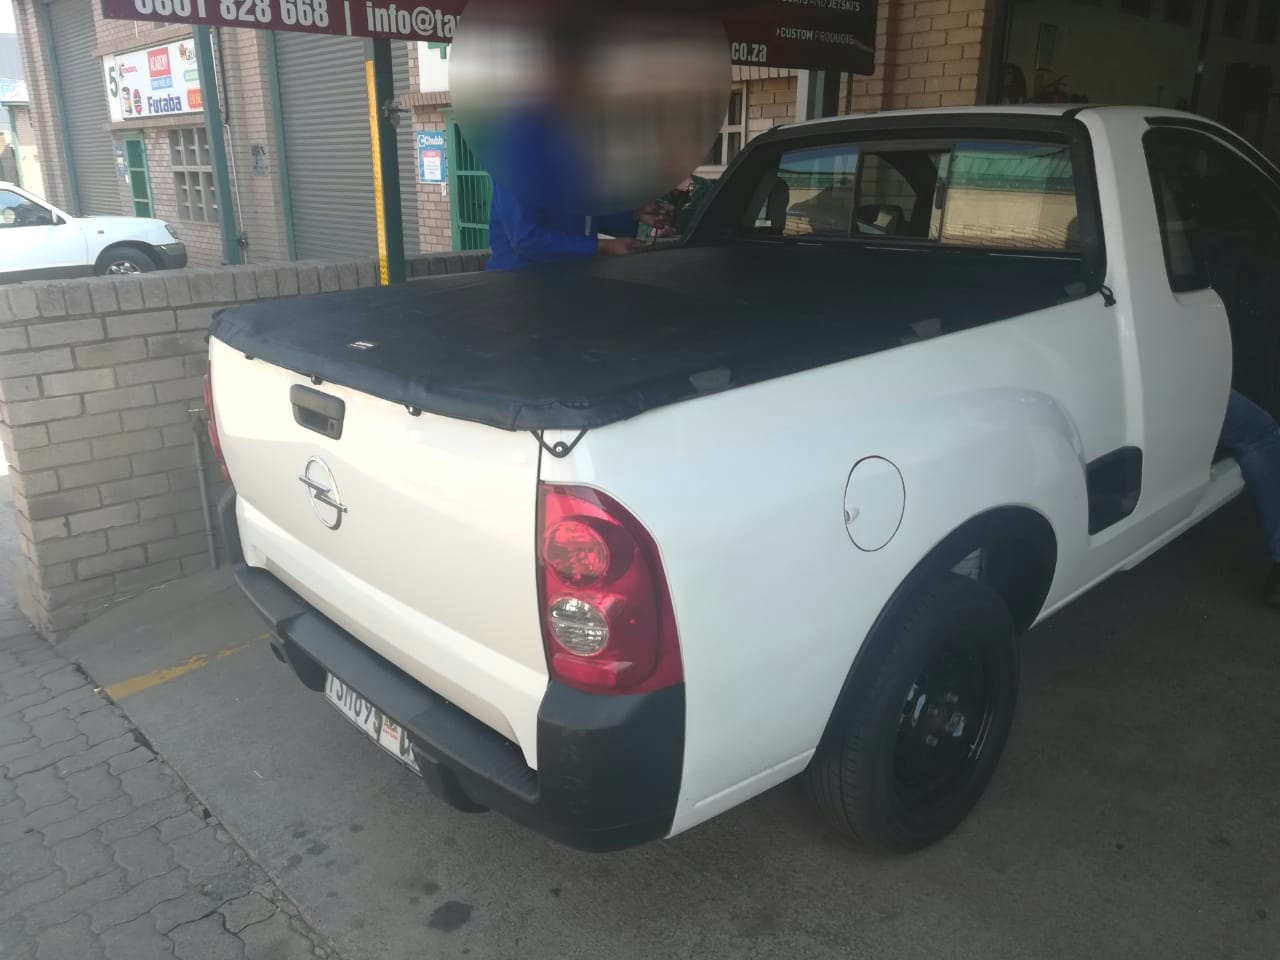 Vehicle hijacked at KwaMashu